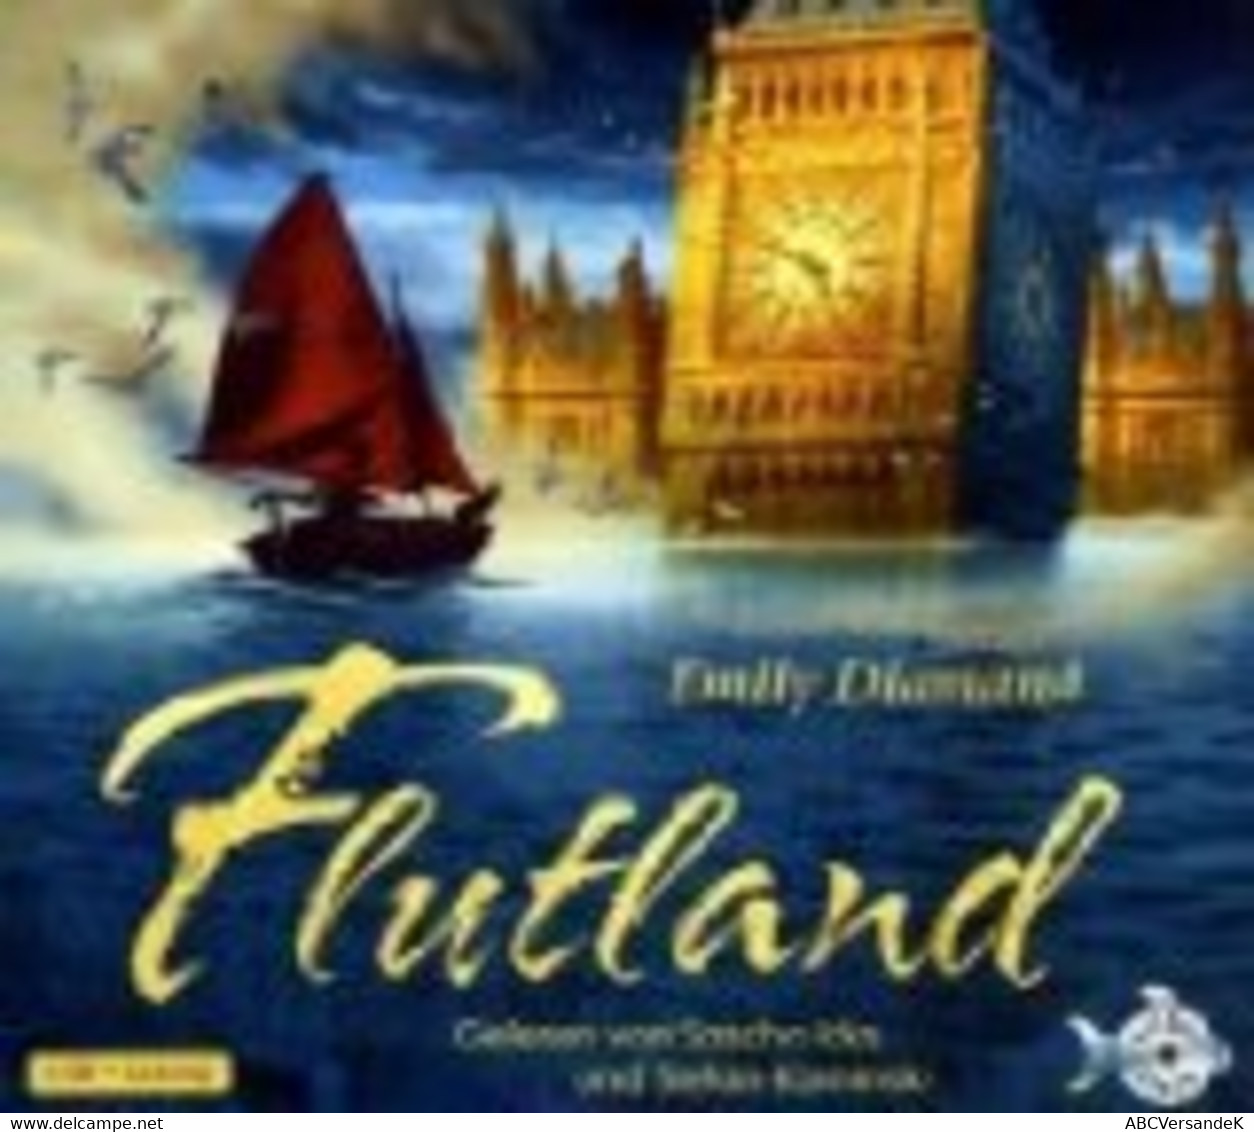 Flutland - CD